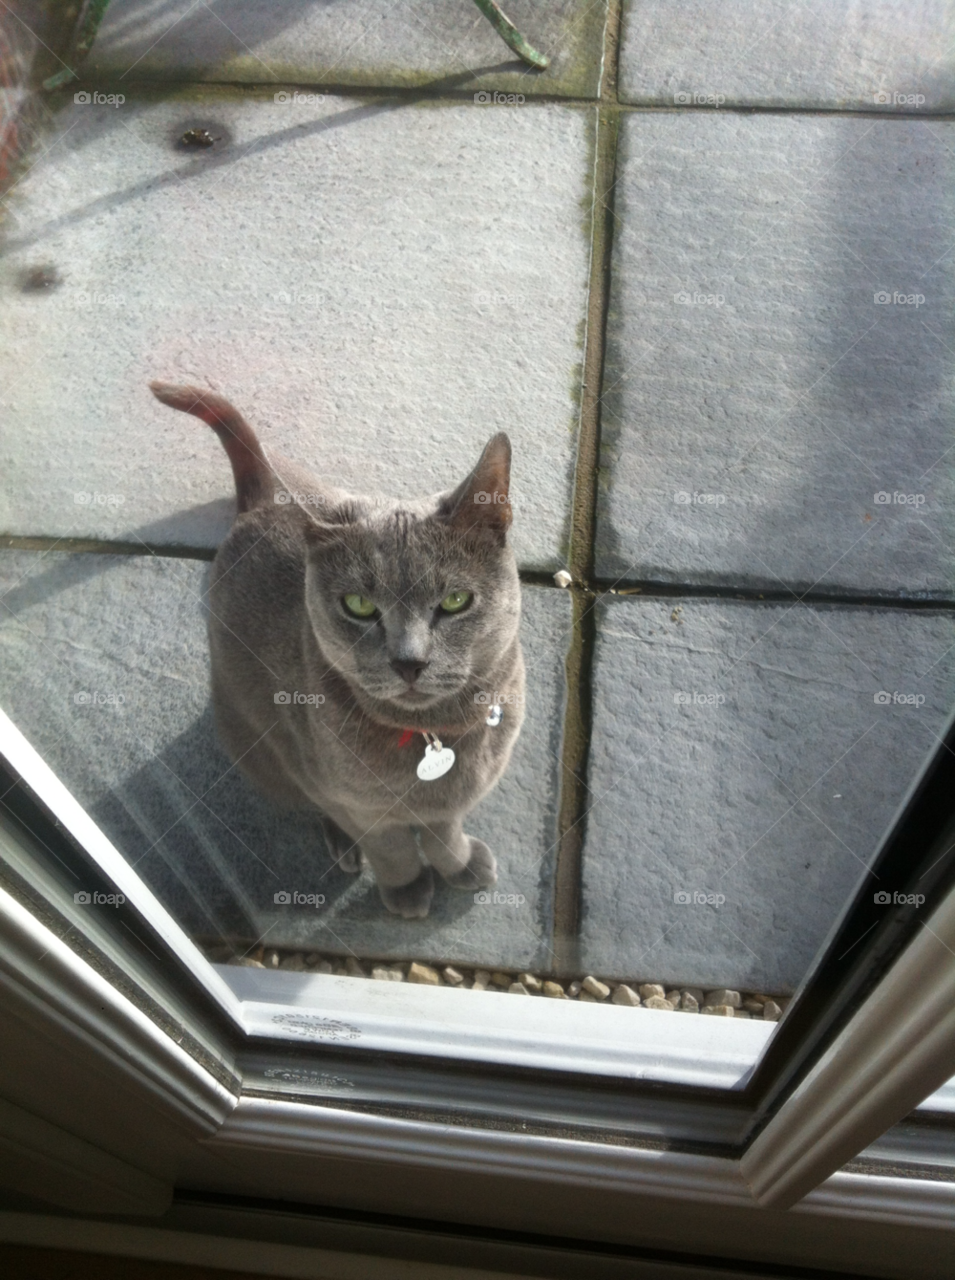 london cat window door by WillR